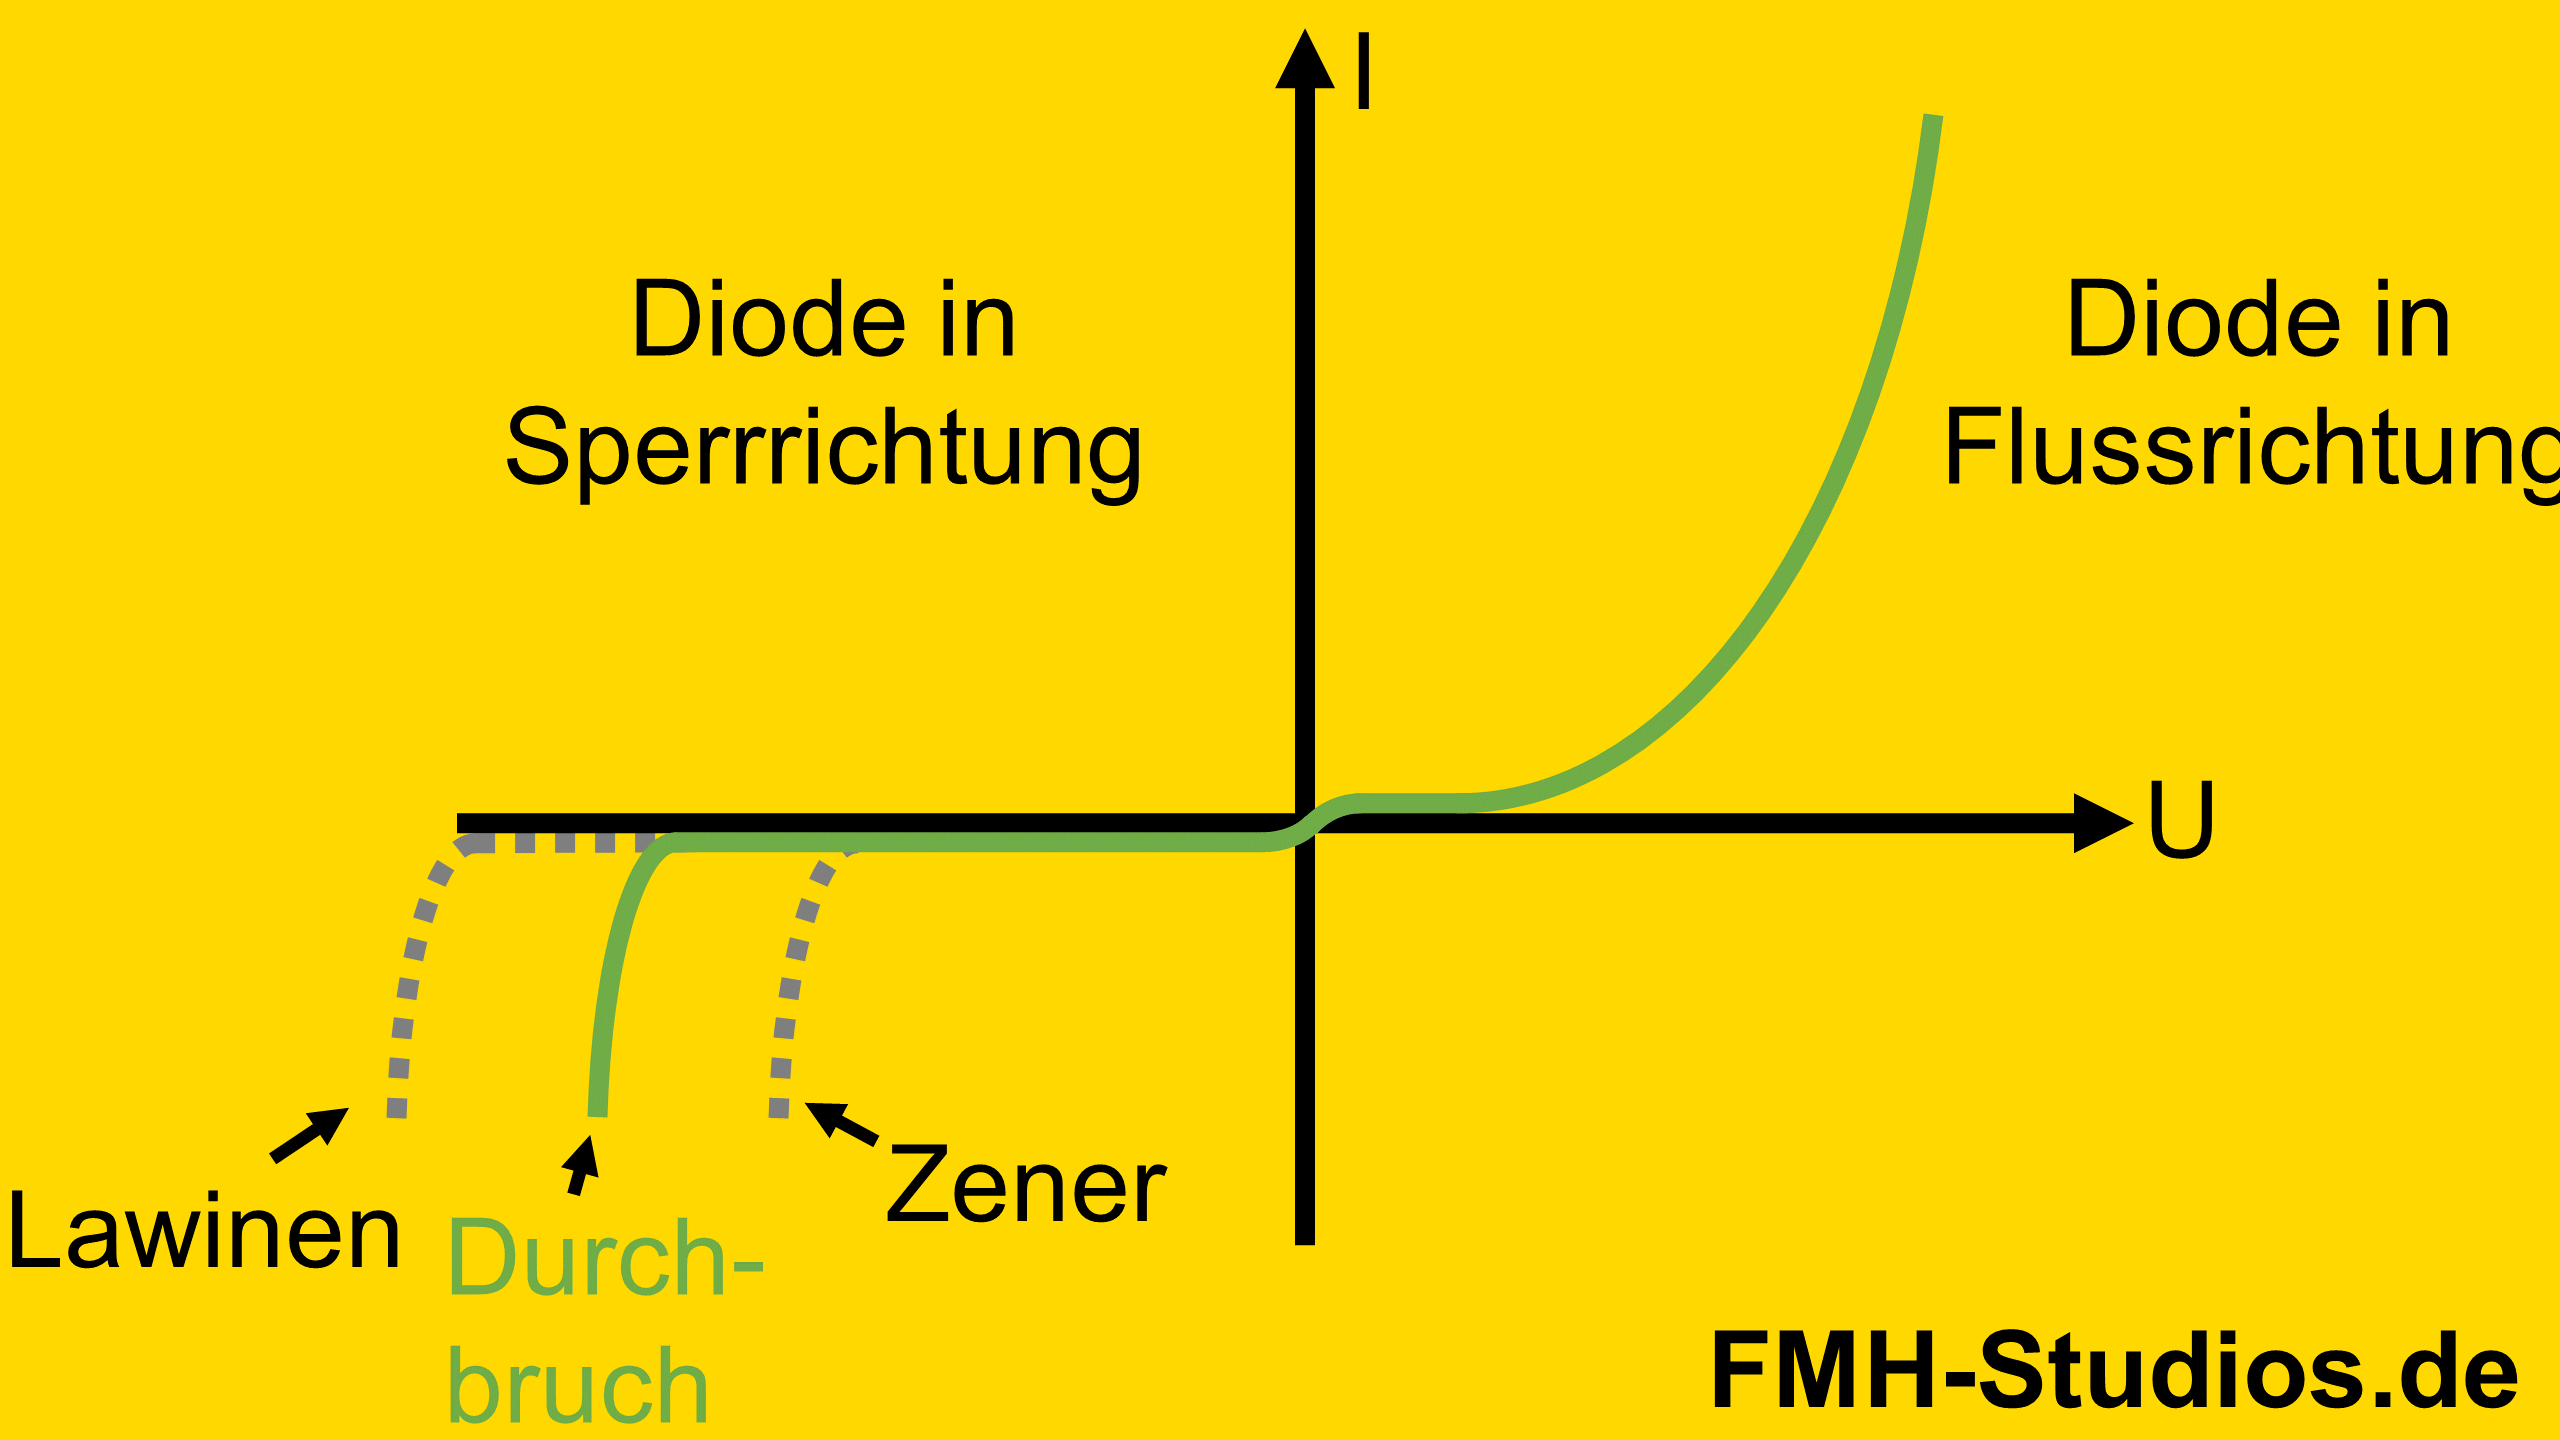 Diode - Halbleiter - PN-Übergang - PIN-Diode - PIN - Diodenkennlinie - Durchbruch - Durchbruchspannung